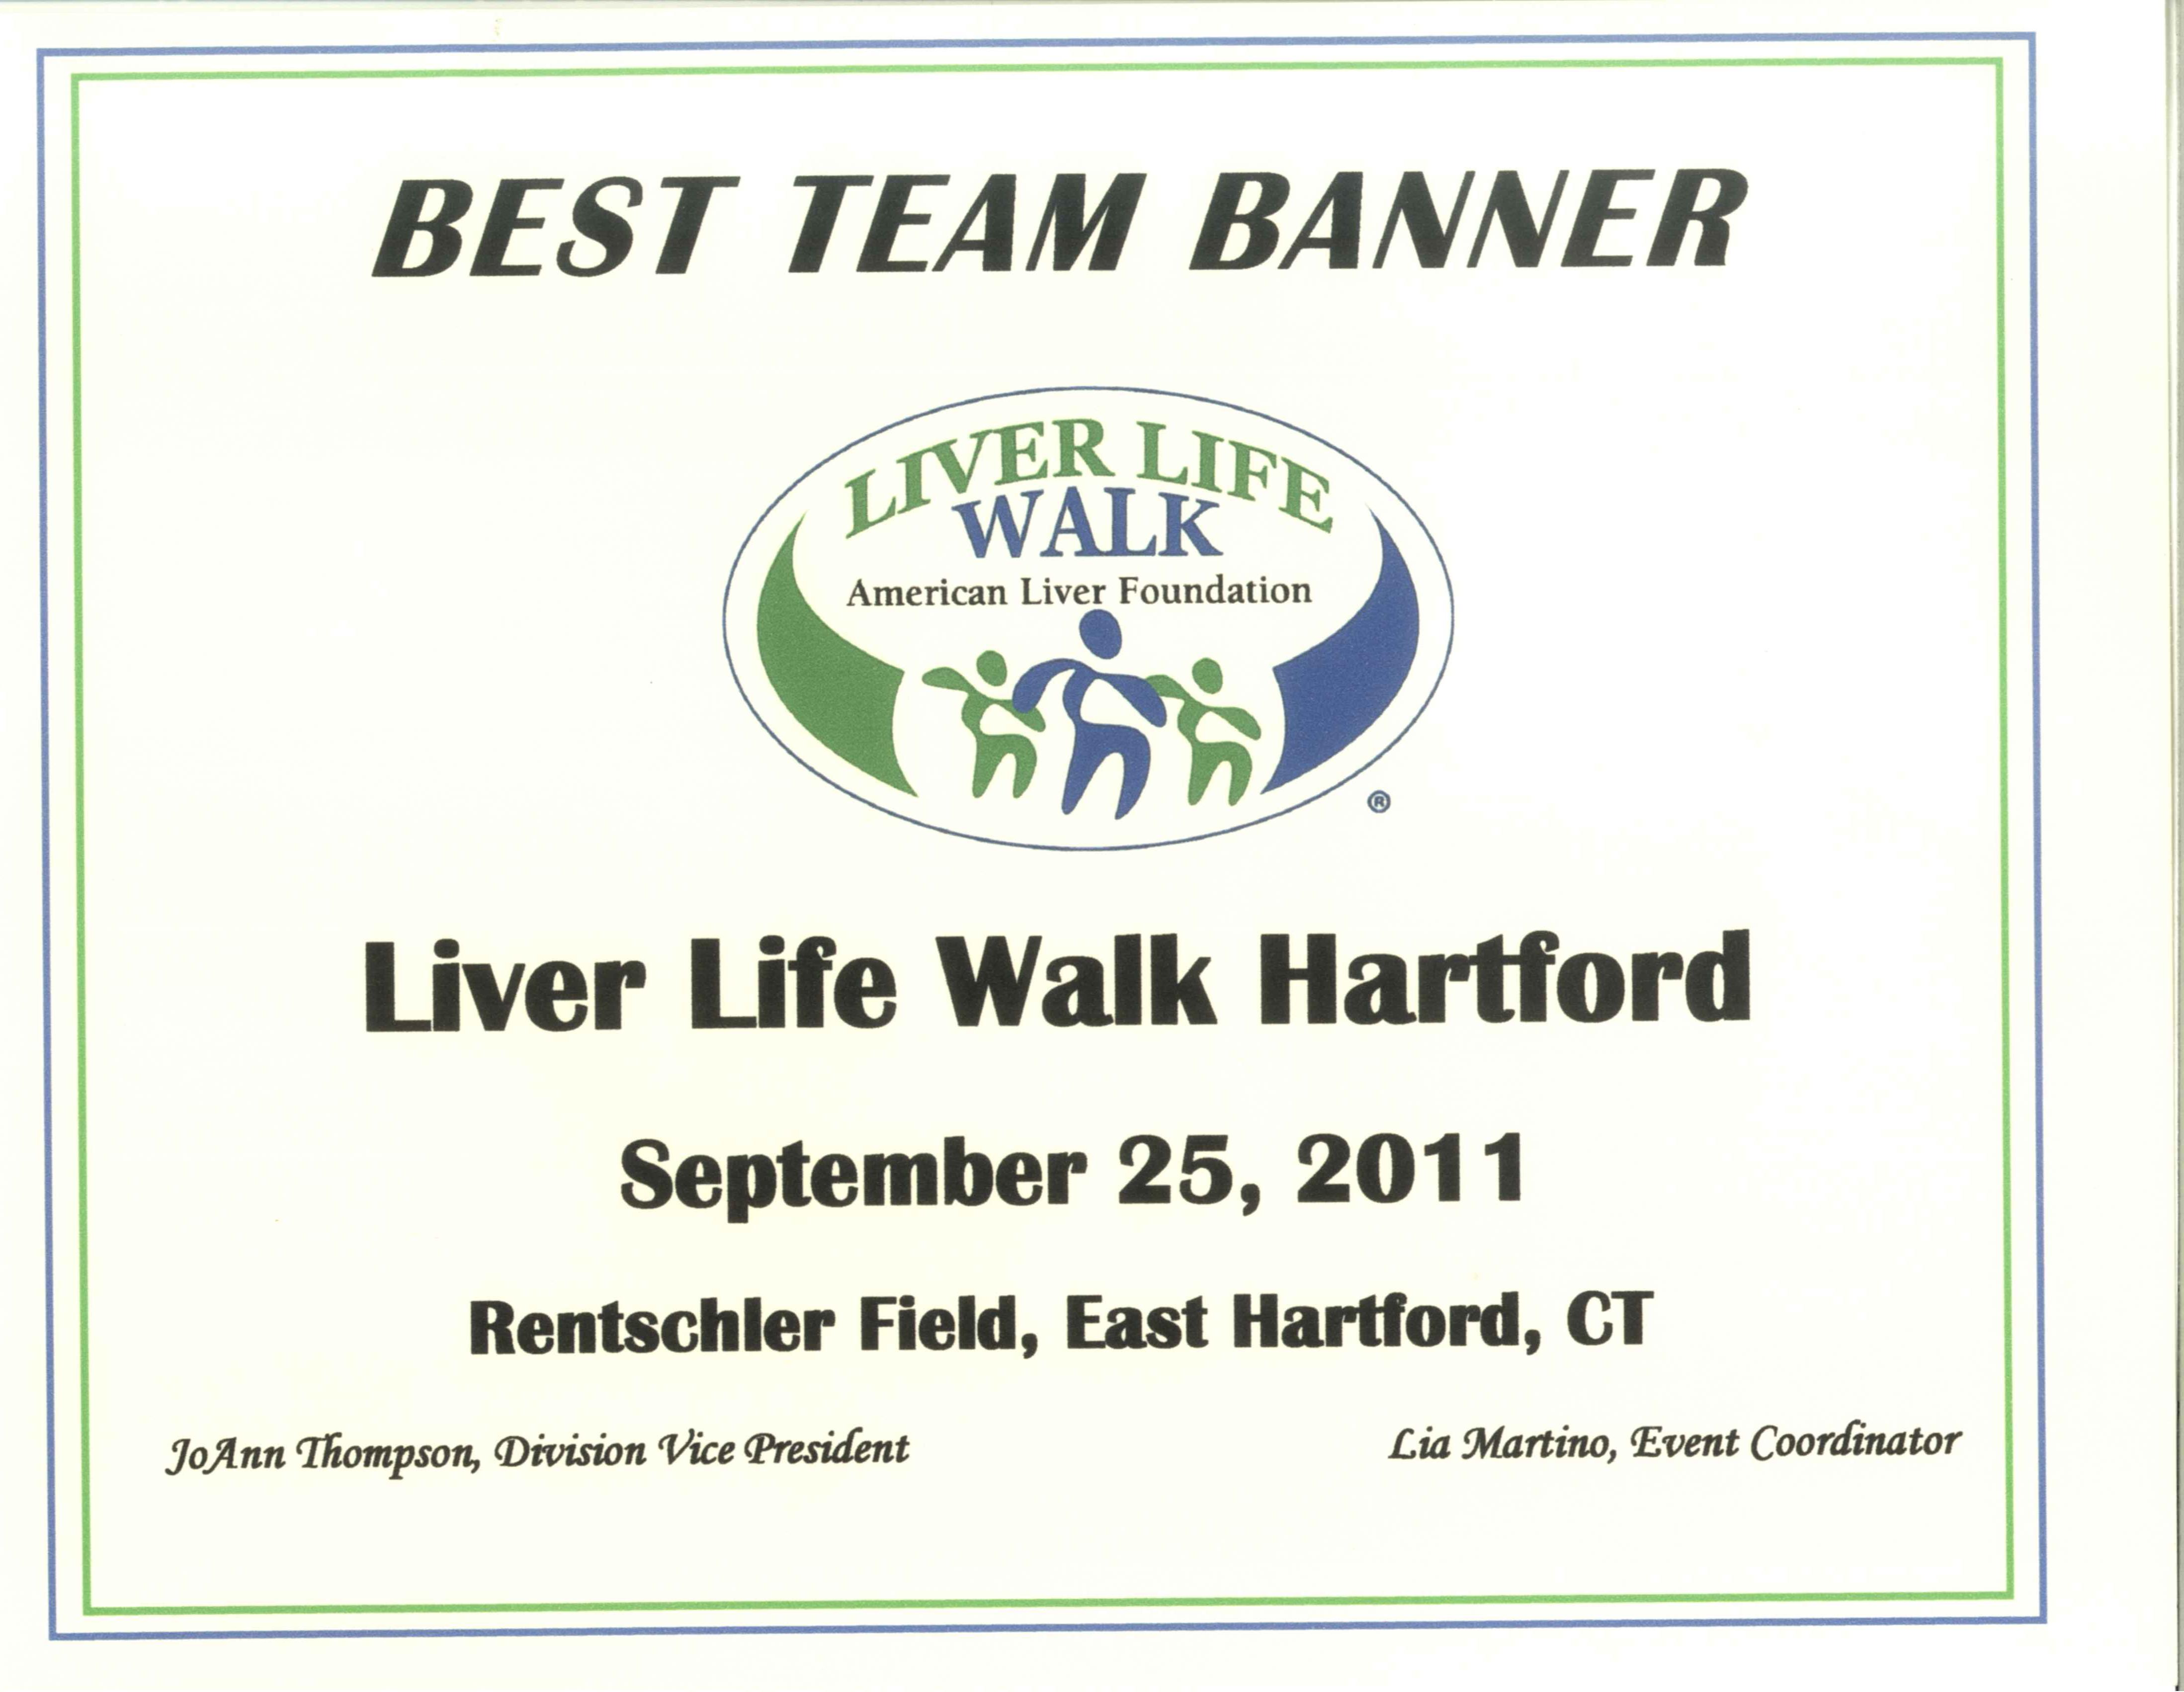 Liver Life Walk Hartford 2011 Best Team Banner 2011